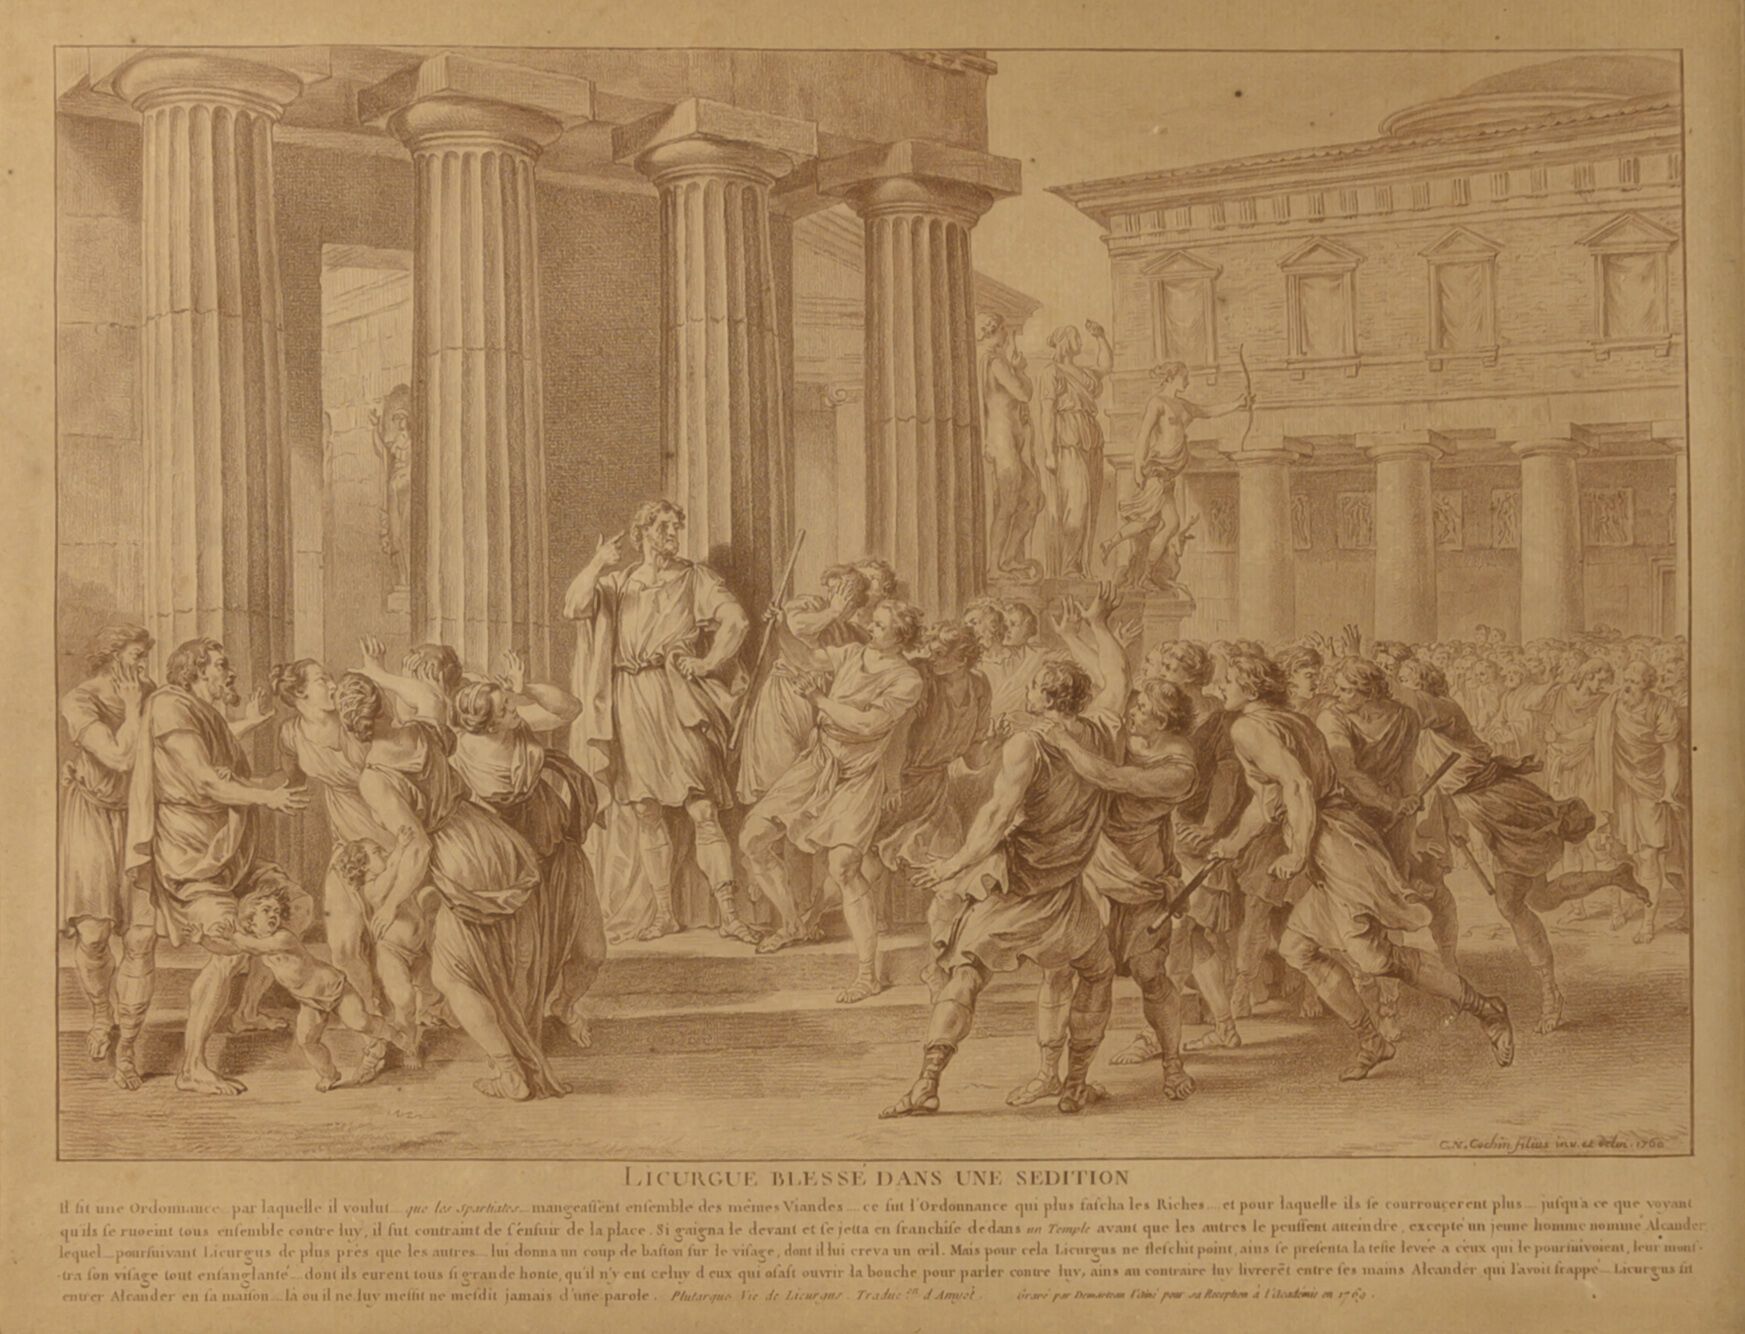 D'après Charles-Nicolas II COCHIN (1715-1790) Licurgo herido en una sedición. 

&hellip;